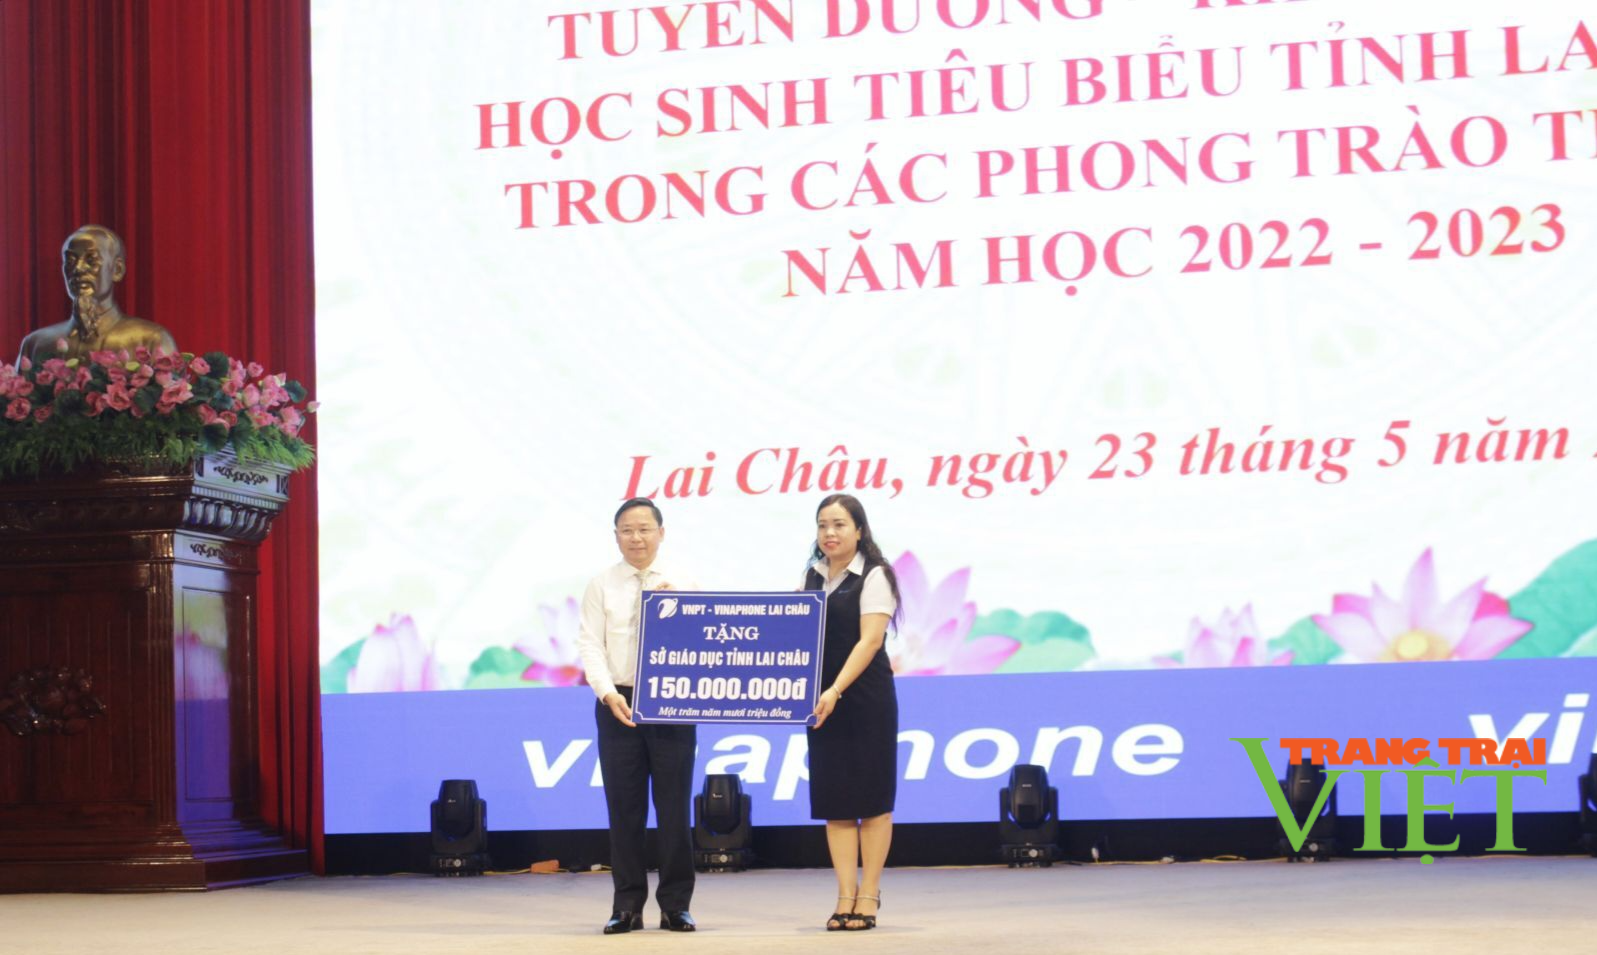 Lai Châu: Khen thưởng 190 học sinh tiêu biểu - Ảnh 2.